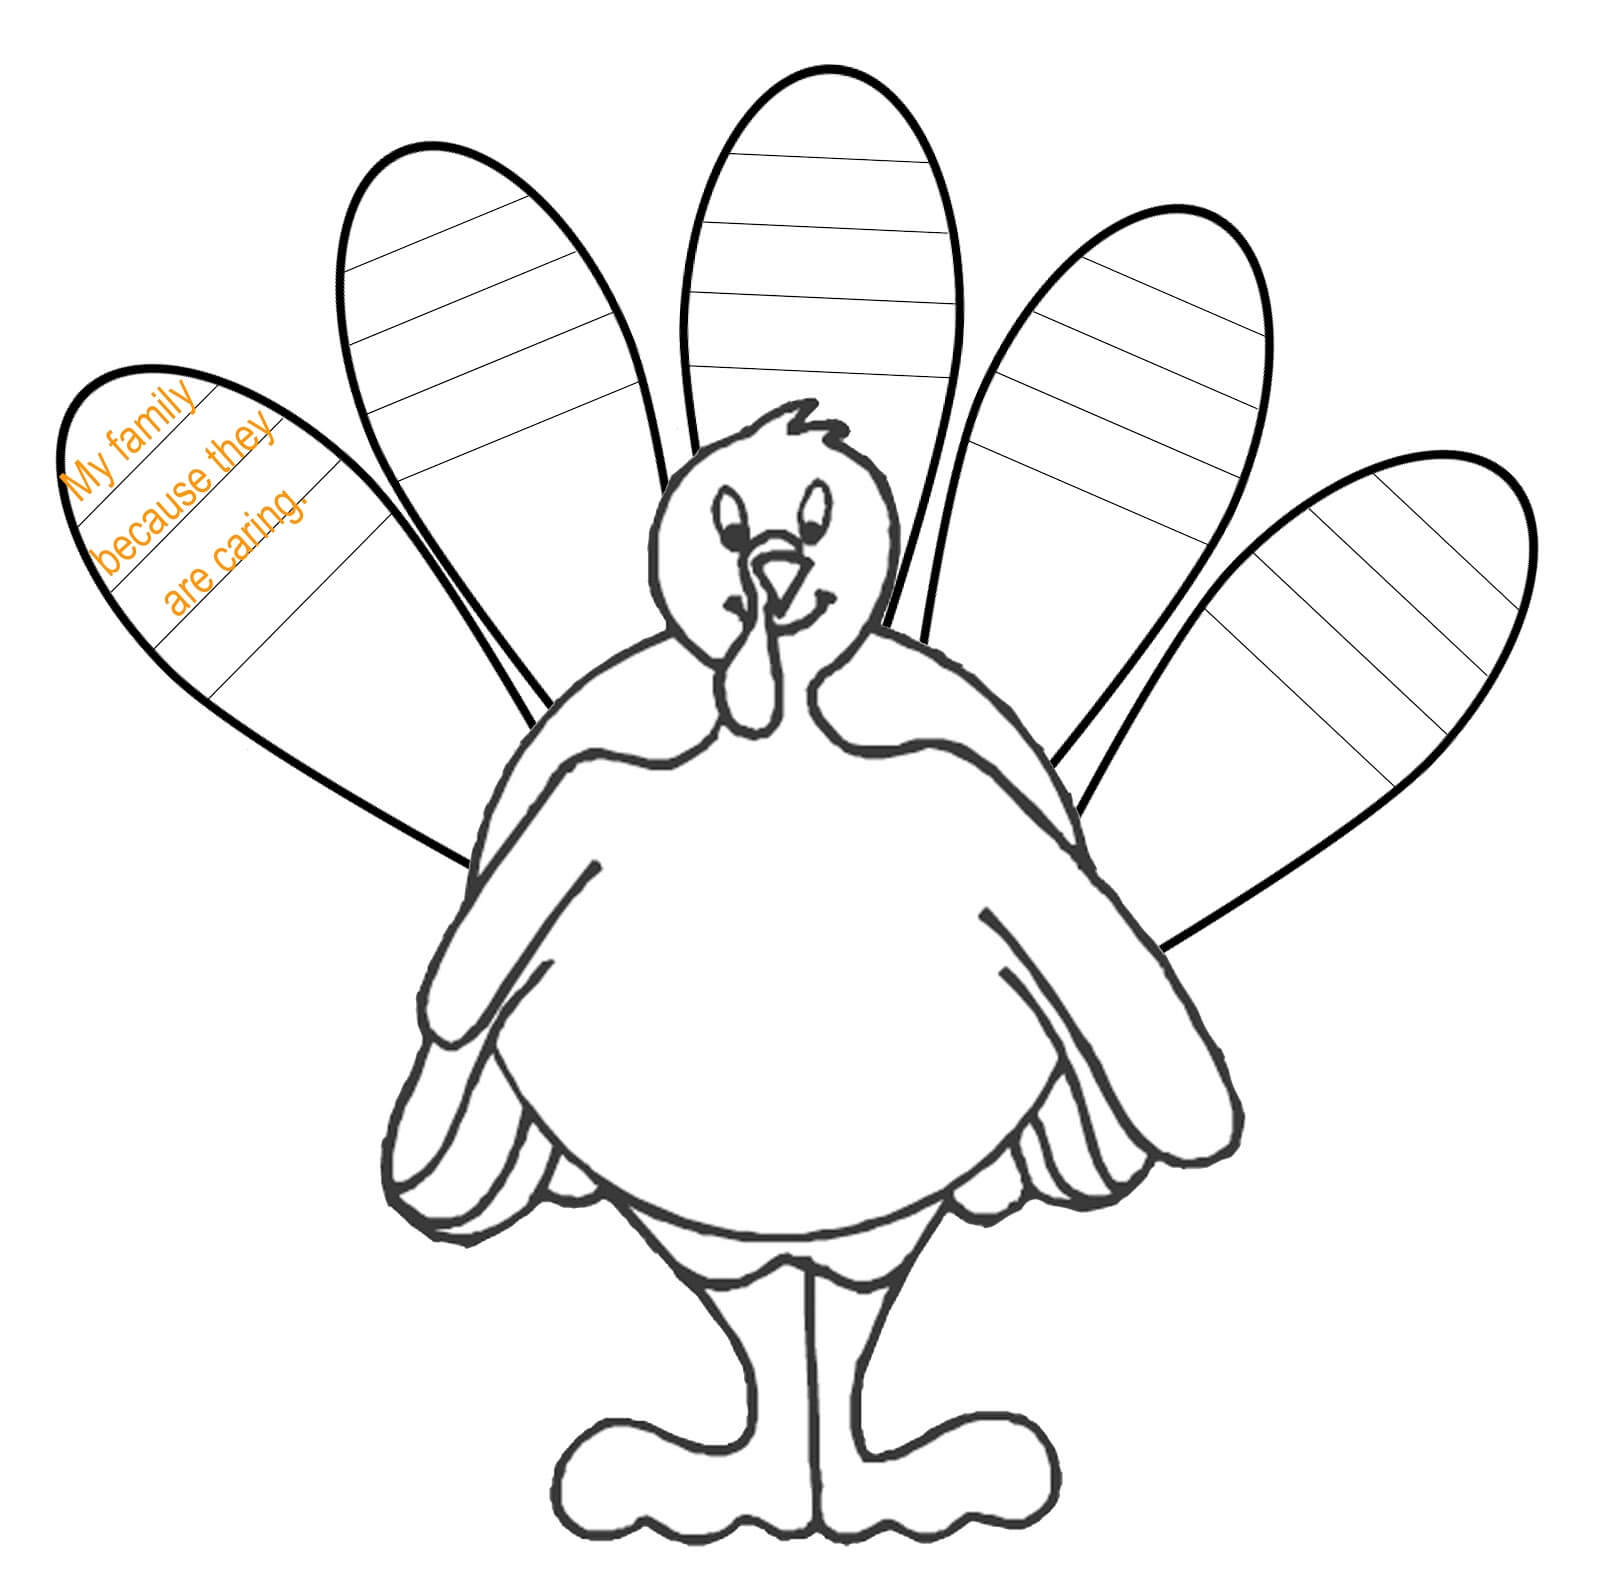 1E17Ecf Turkey Drawing Template C Free Download Best Turkey Regarding Blank Turkey Template